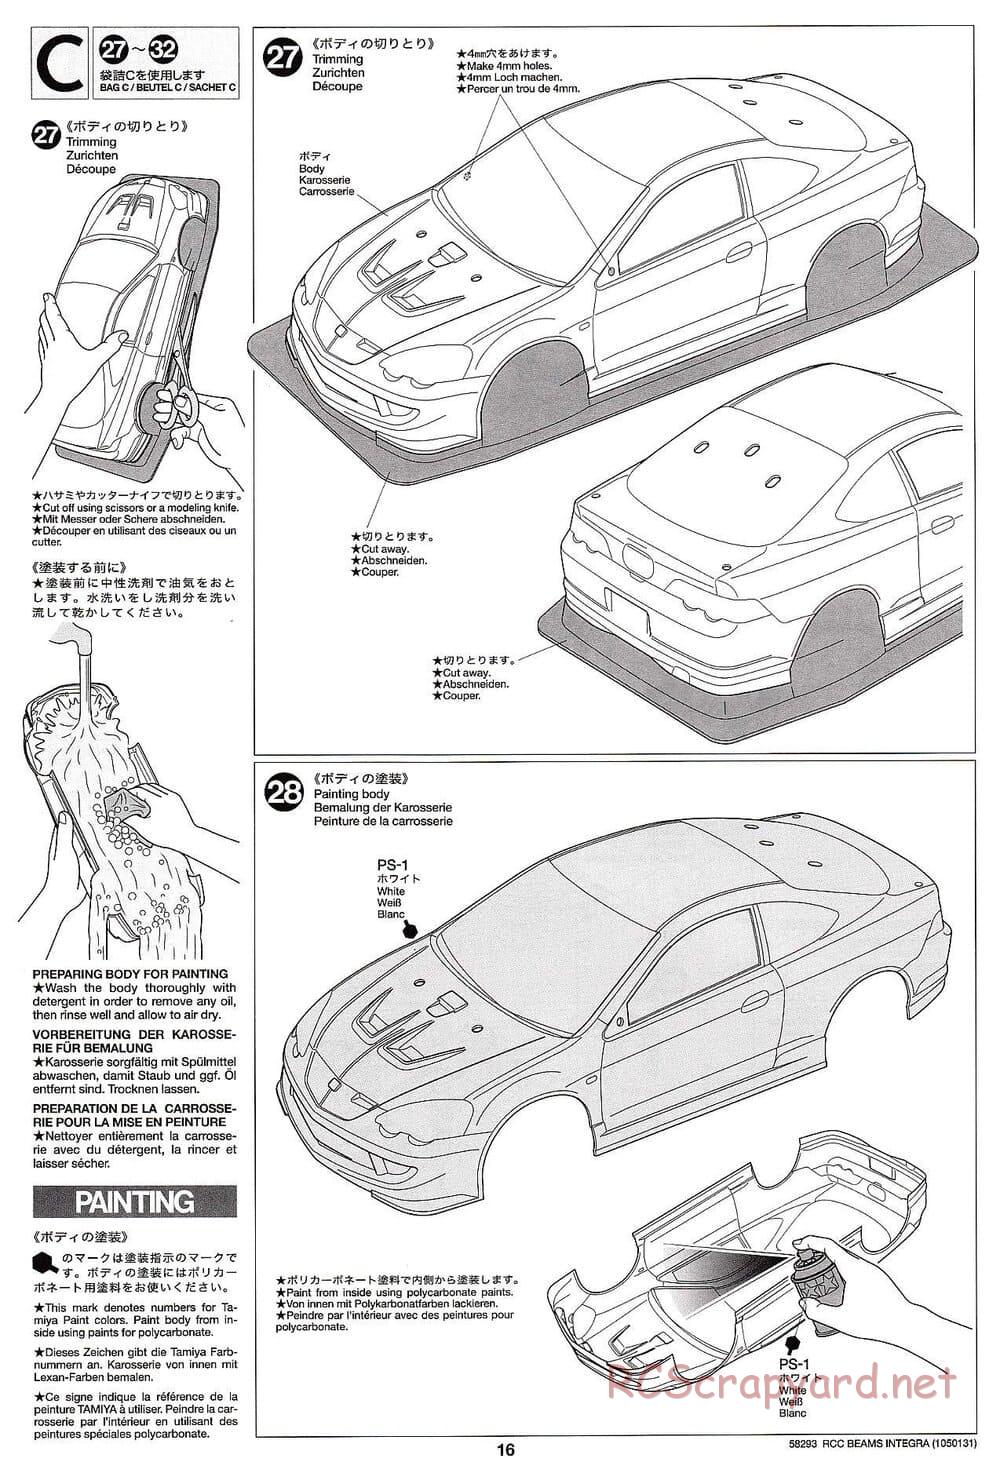 Tamiya - Beams Integra - TL-01 LA Chassis - Manual - Page 16